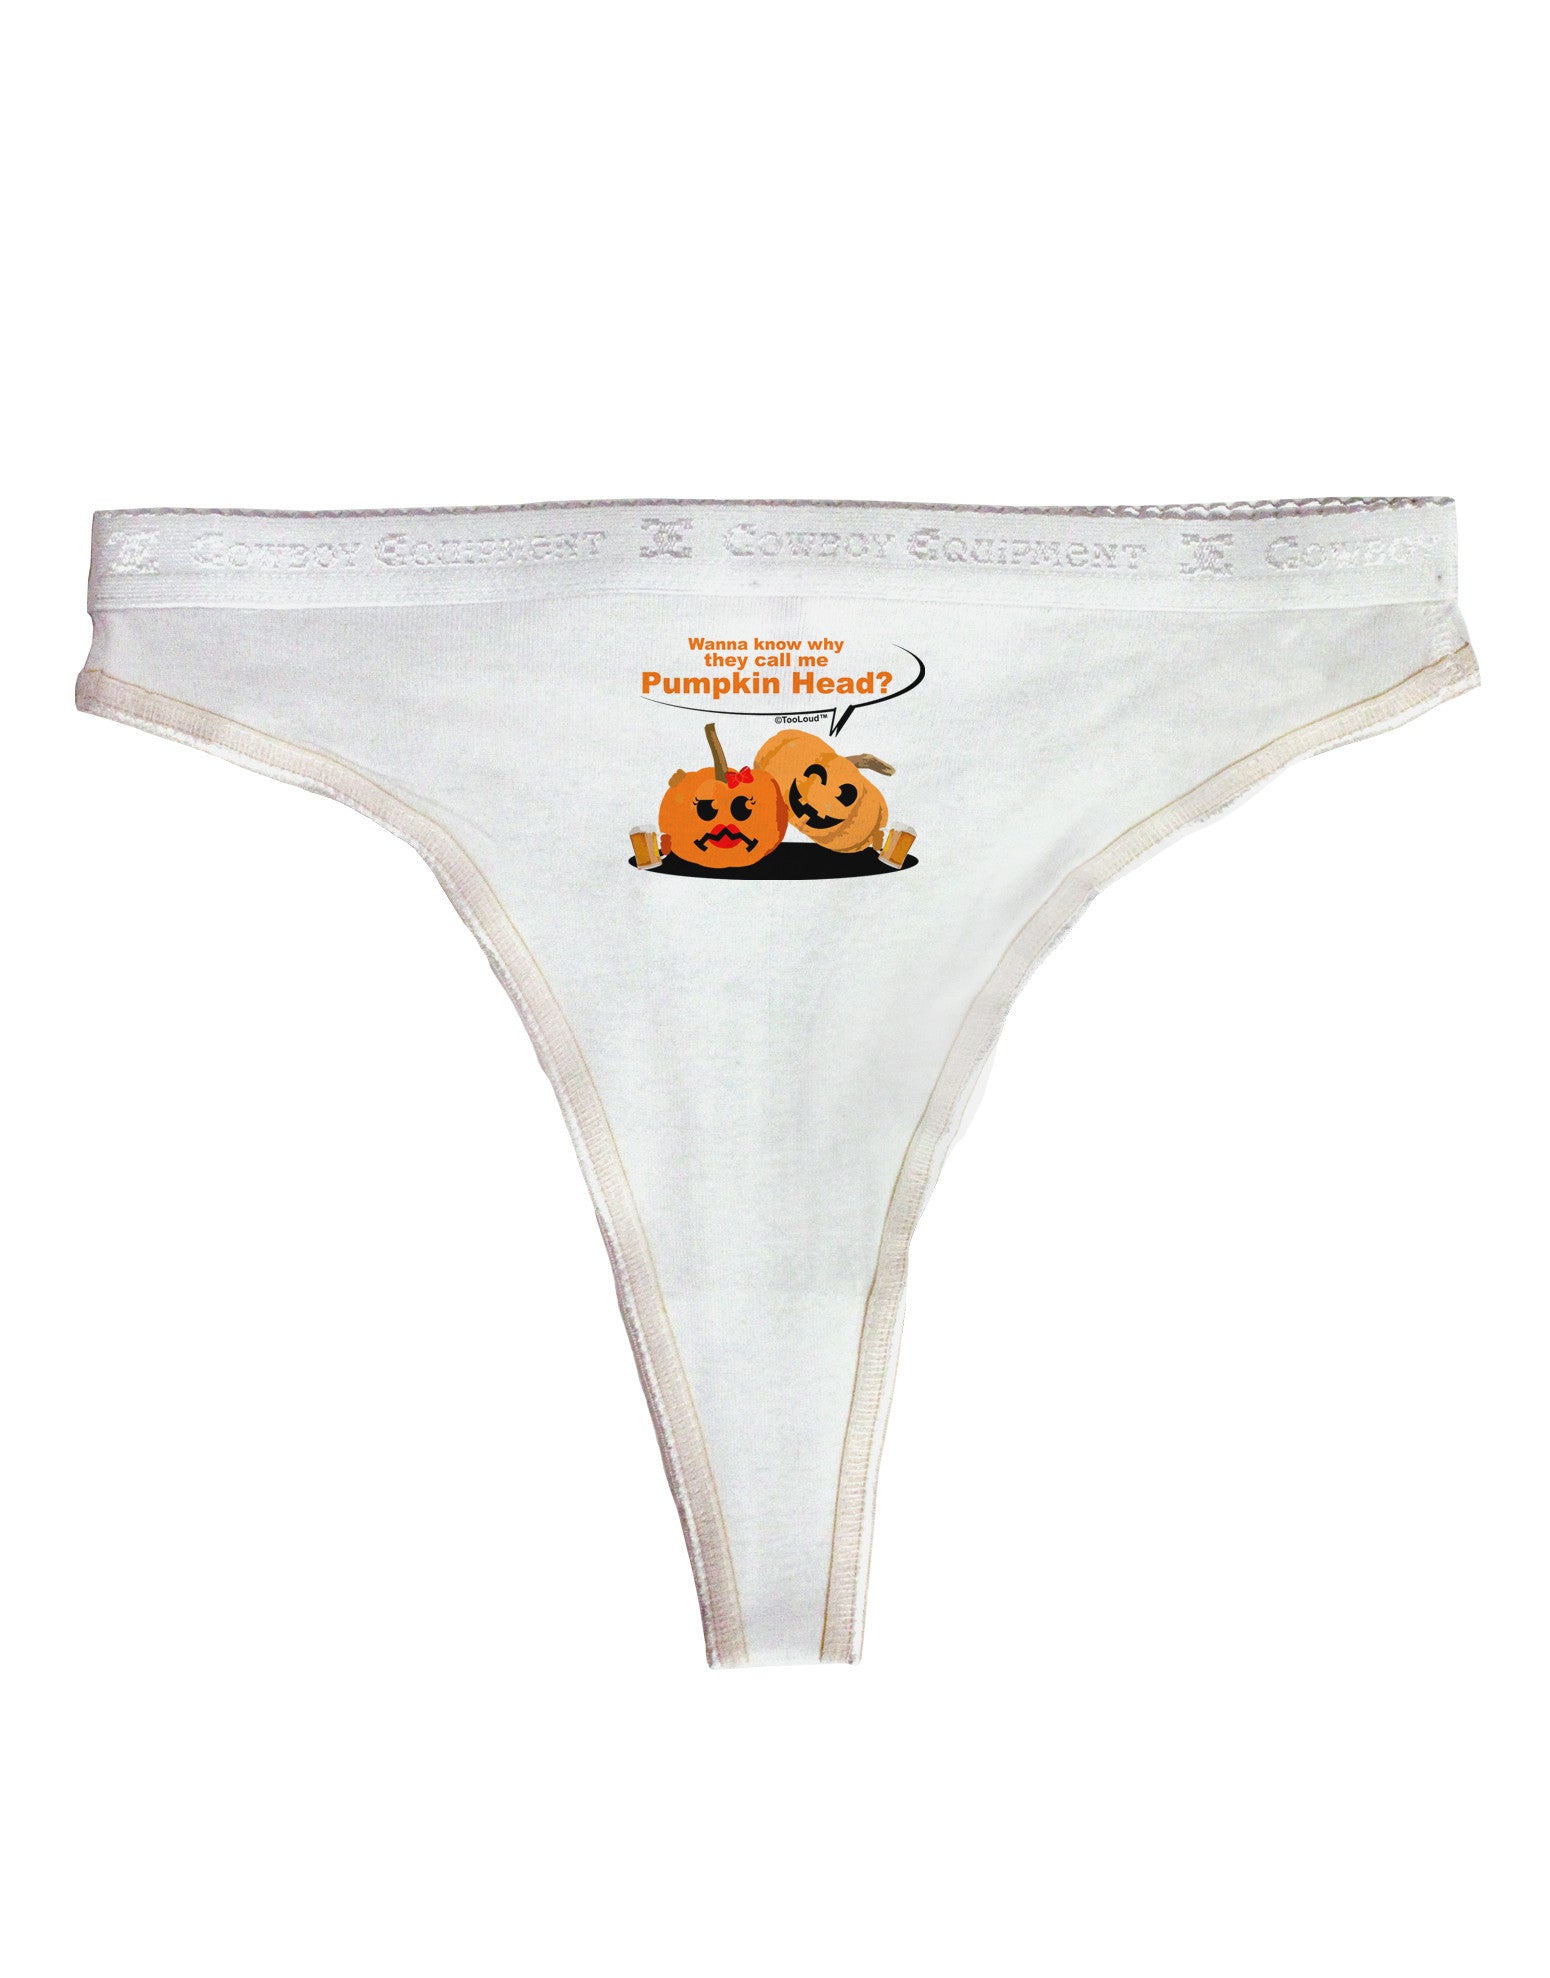 Halloween Pumpkins Mens NDS Wear Briefs Underwear Small Tooloud - Davson  Sales